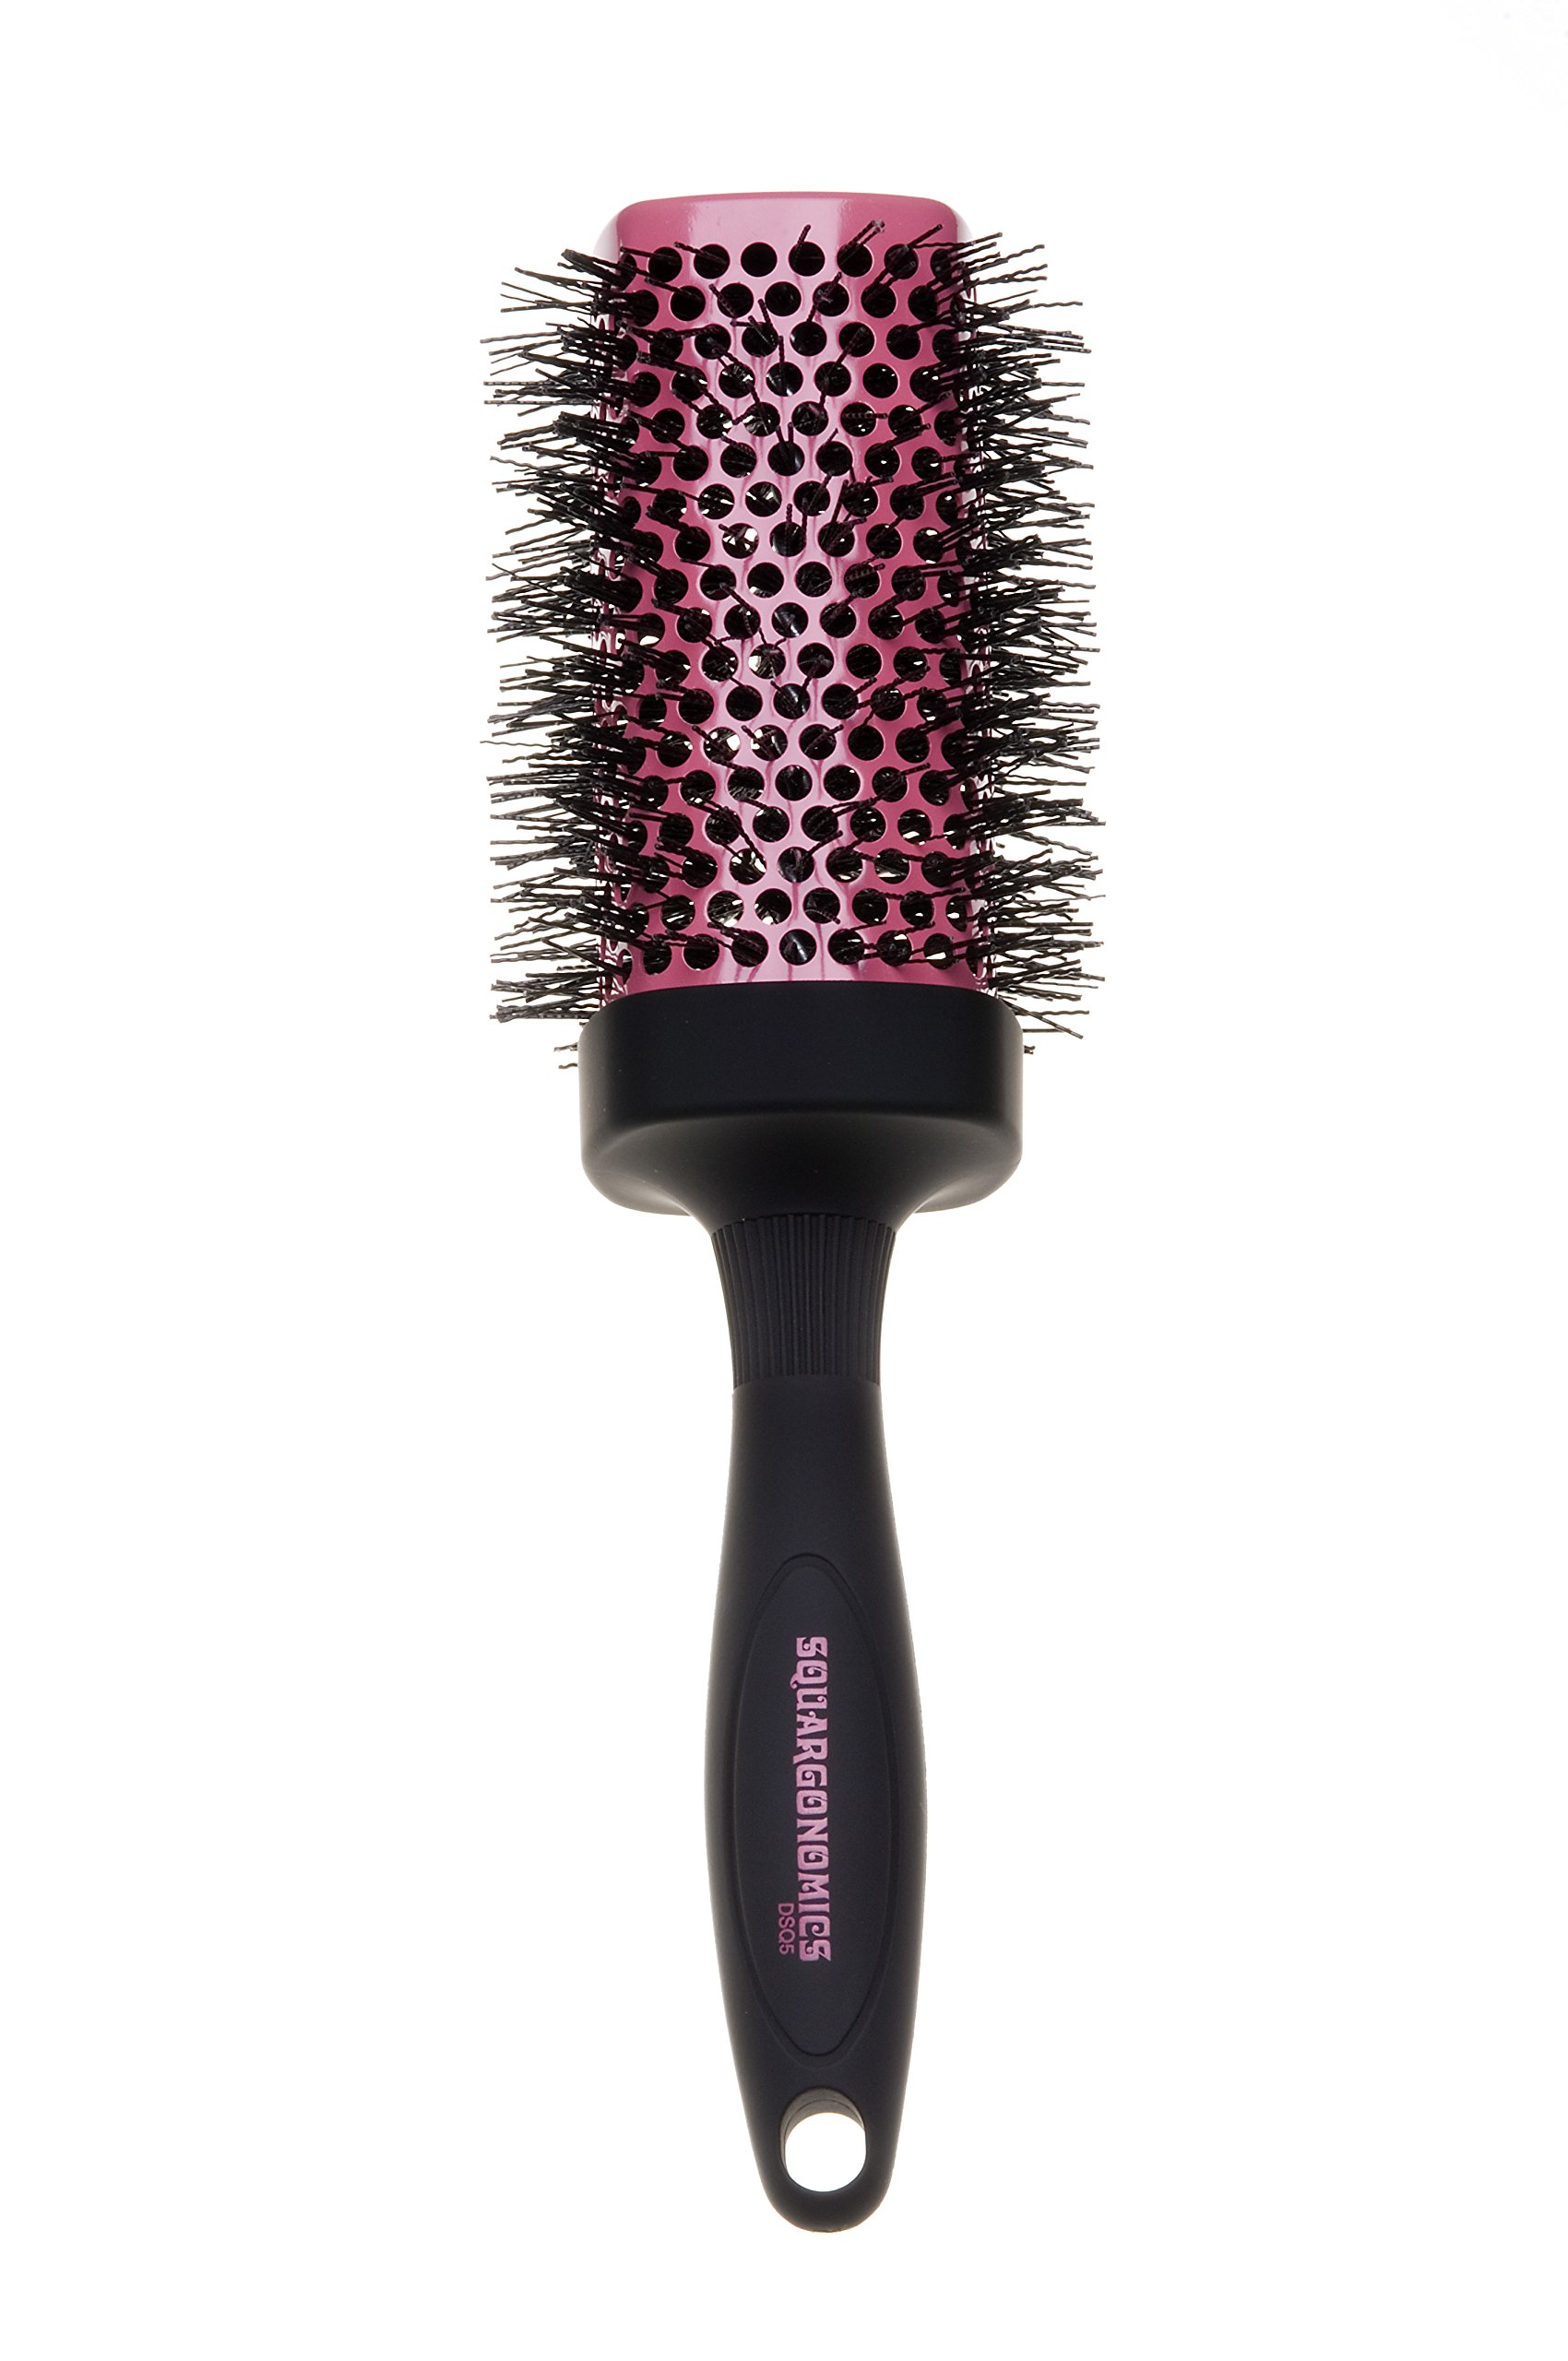 Denman Rund-Haar-Bürste Squargonomics, für schnelles/schonendes Föhnen und Glätten langer Haare, gewellte Nylonborsten, Durchmesser 53 mm, silber